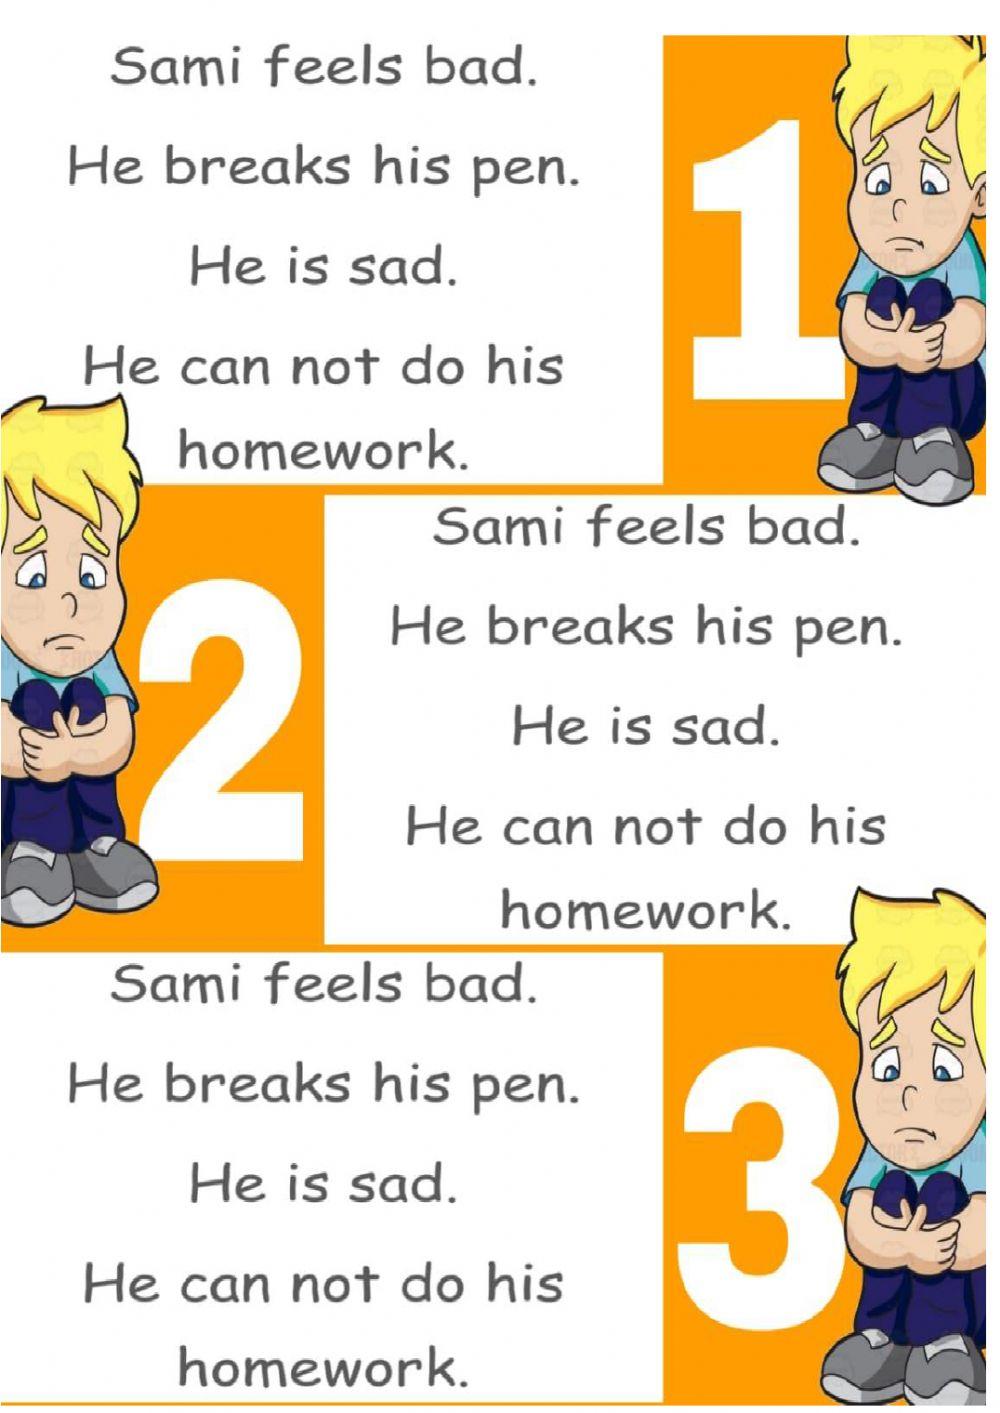 Sami is sad